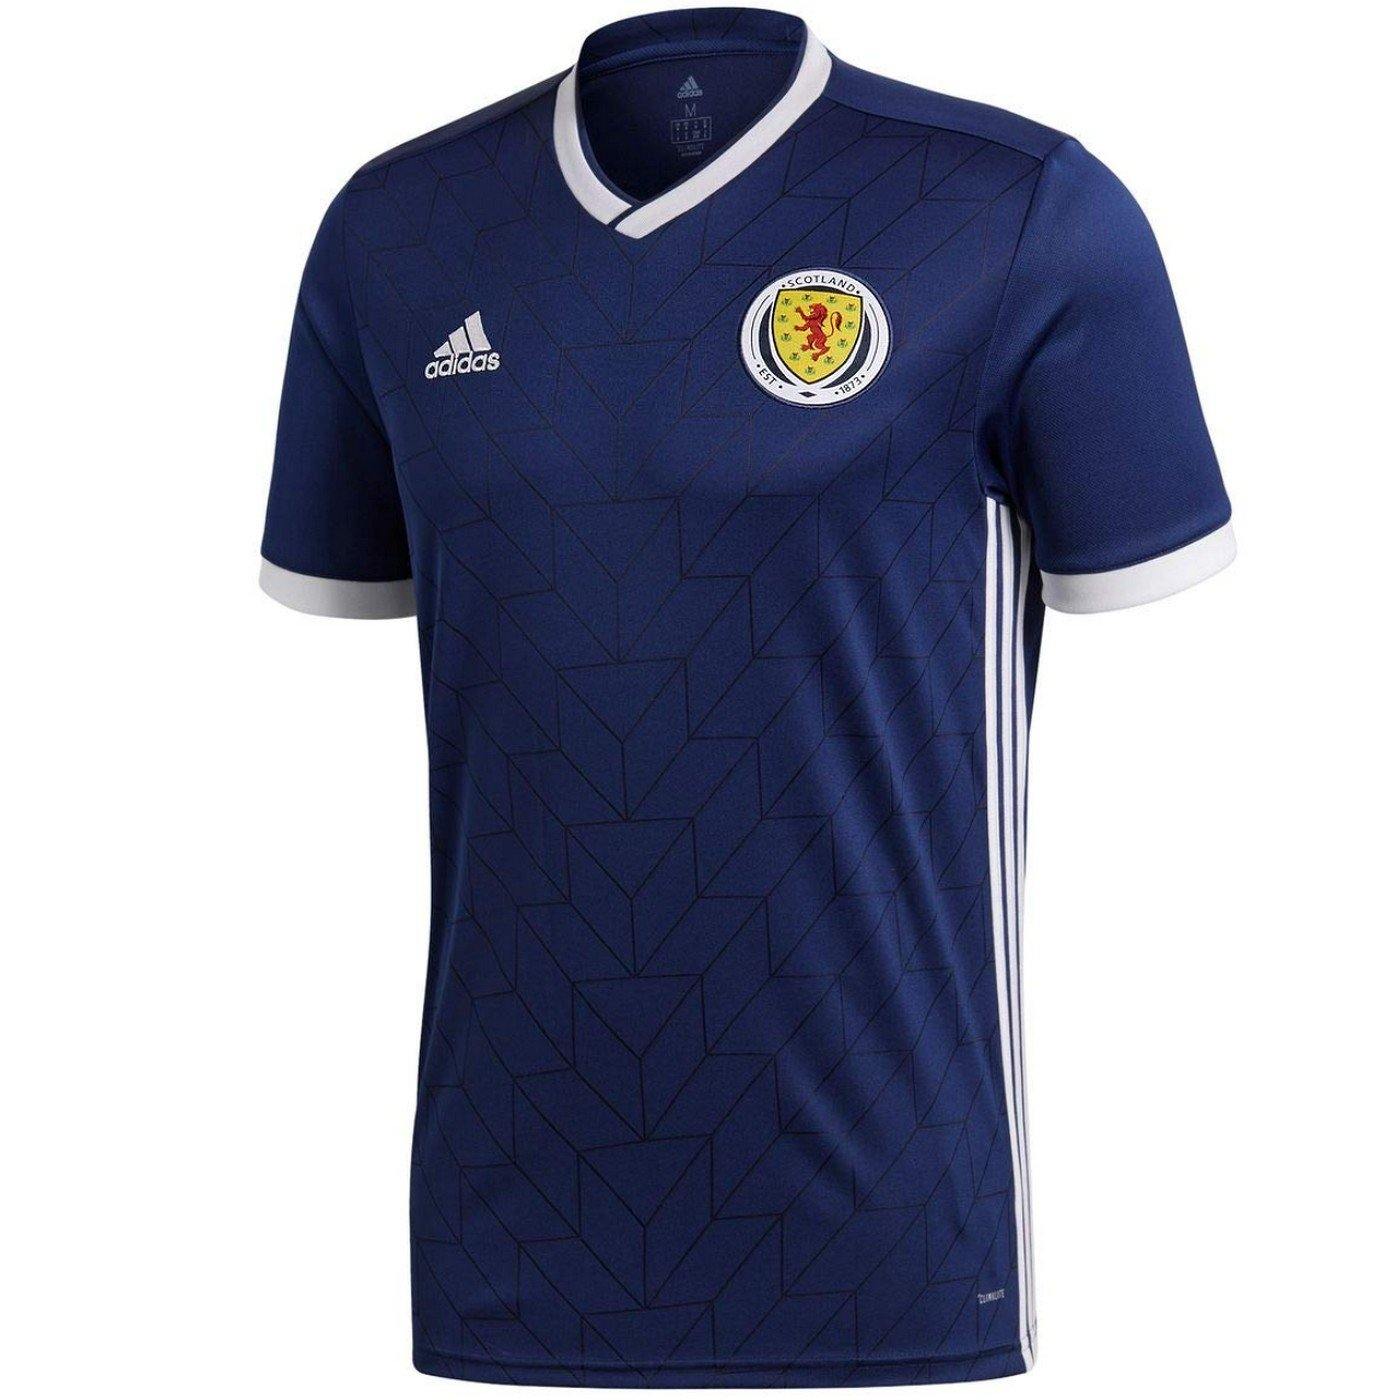 scotland national football team jersey